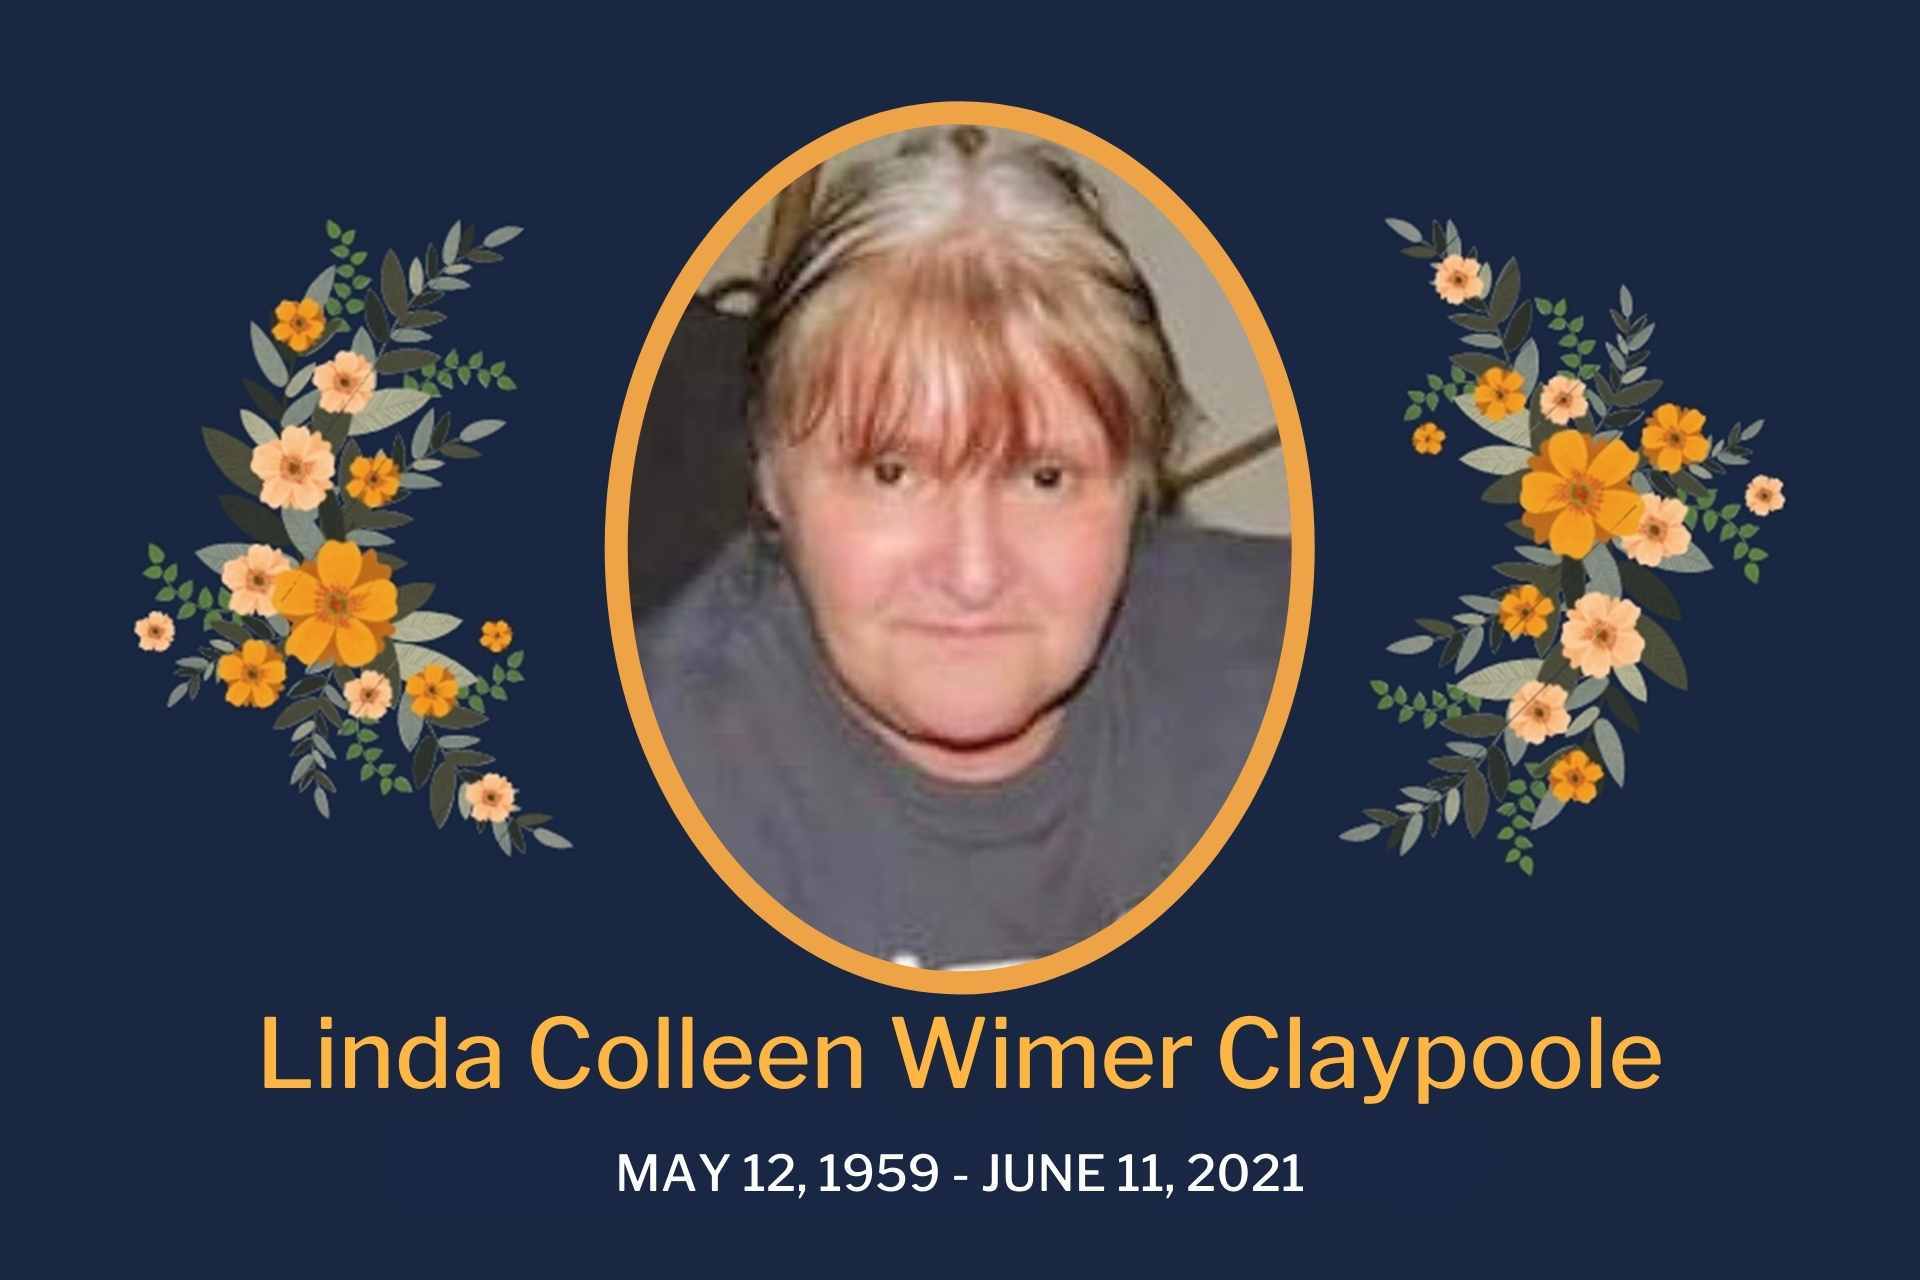 Obituary Linda Claypoole